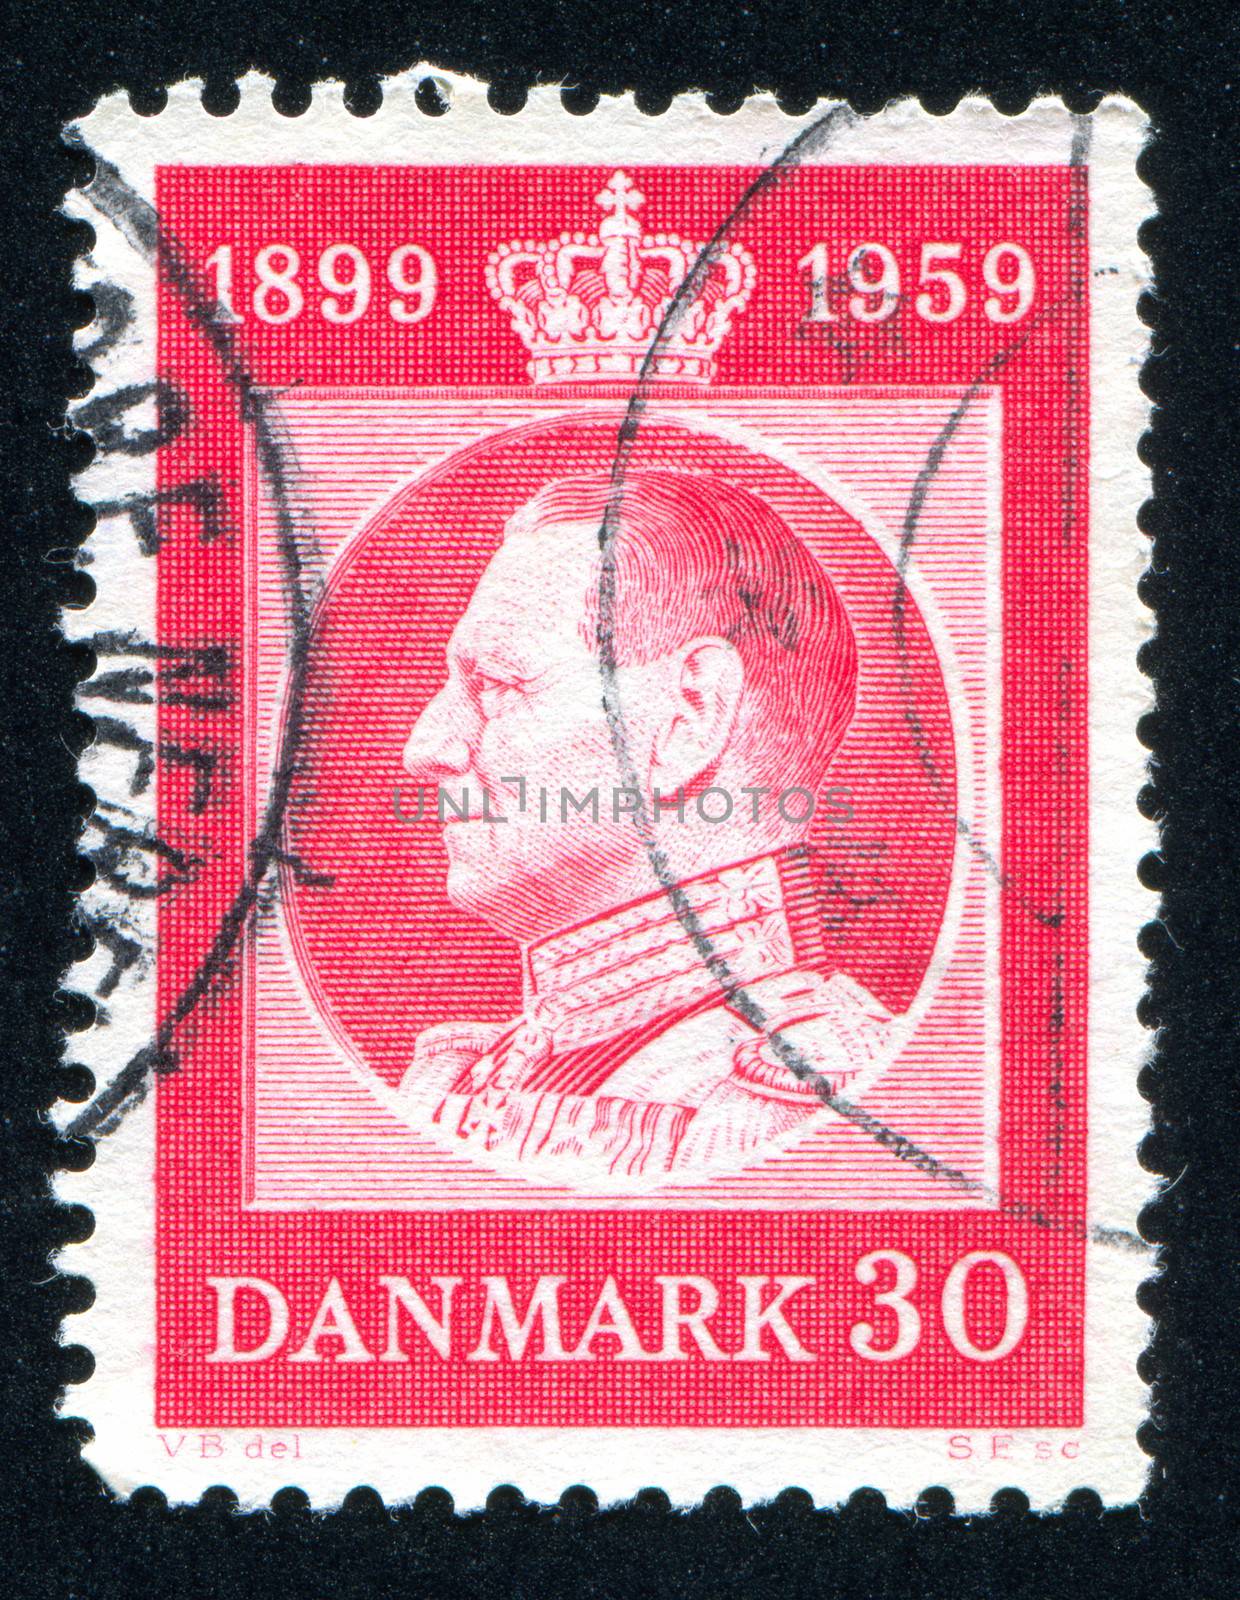 DENMARK - CIRCA 1959: stamp printed by Denmark, shows Frederik IX, circa 1959